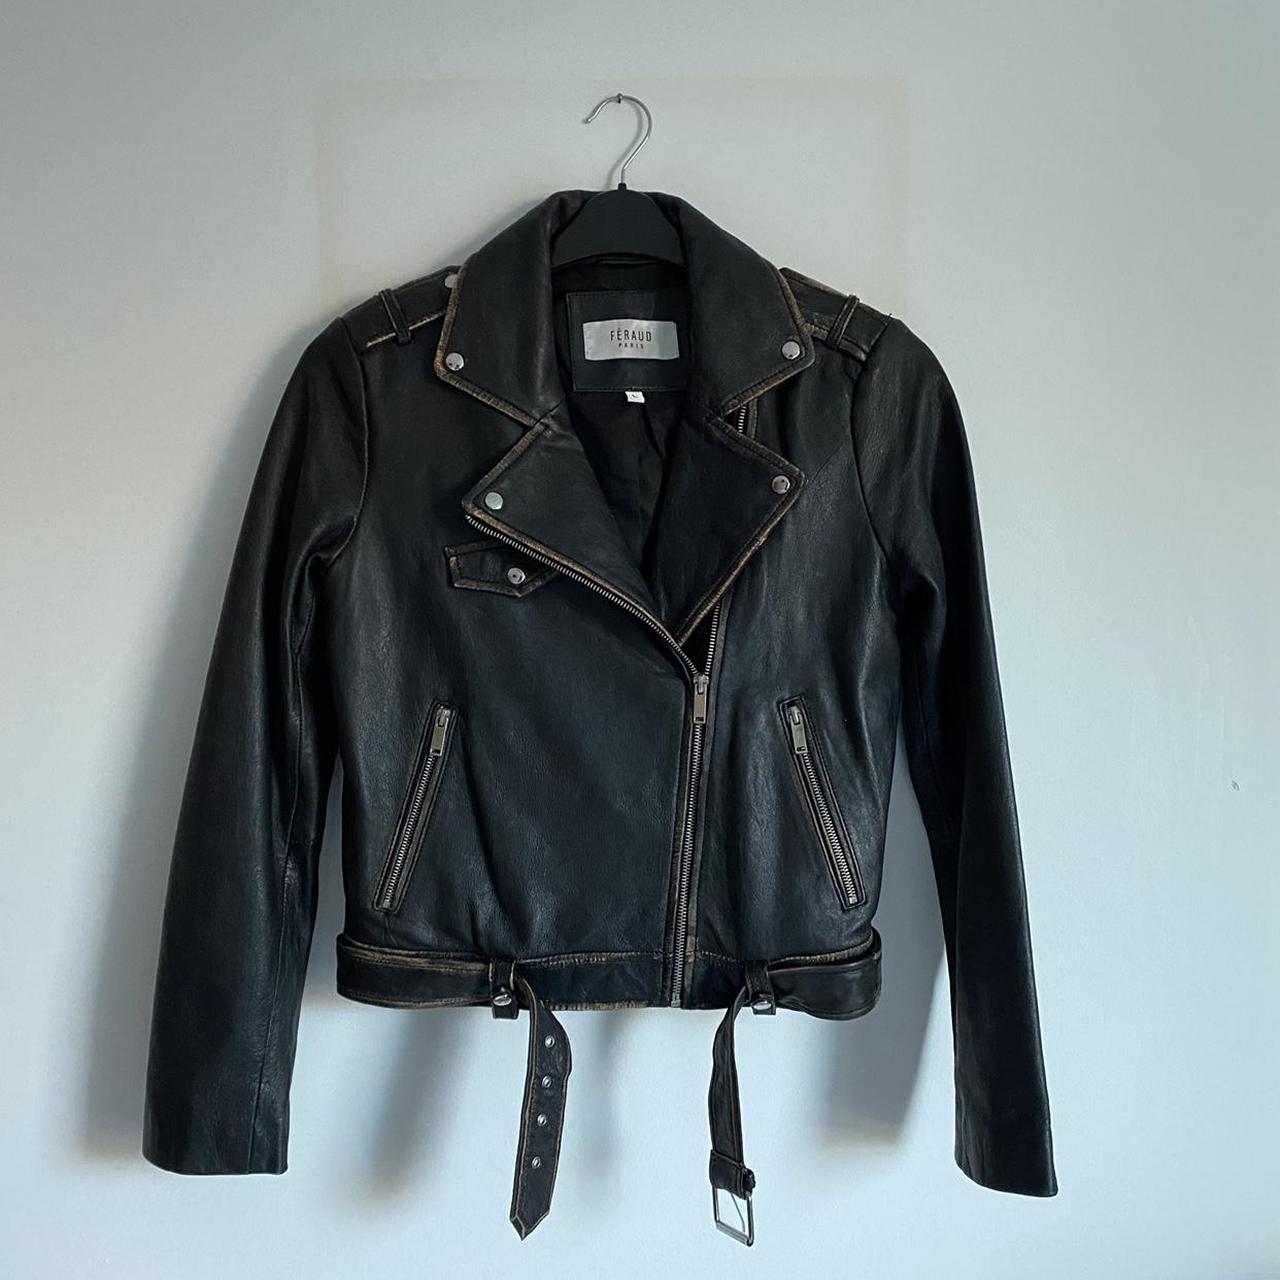 Féraud Paris Black Distressed Leather Jacket, in... - Depop